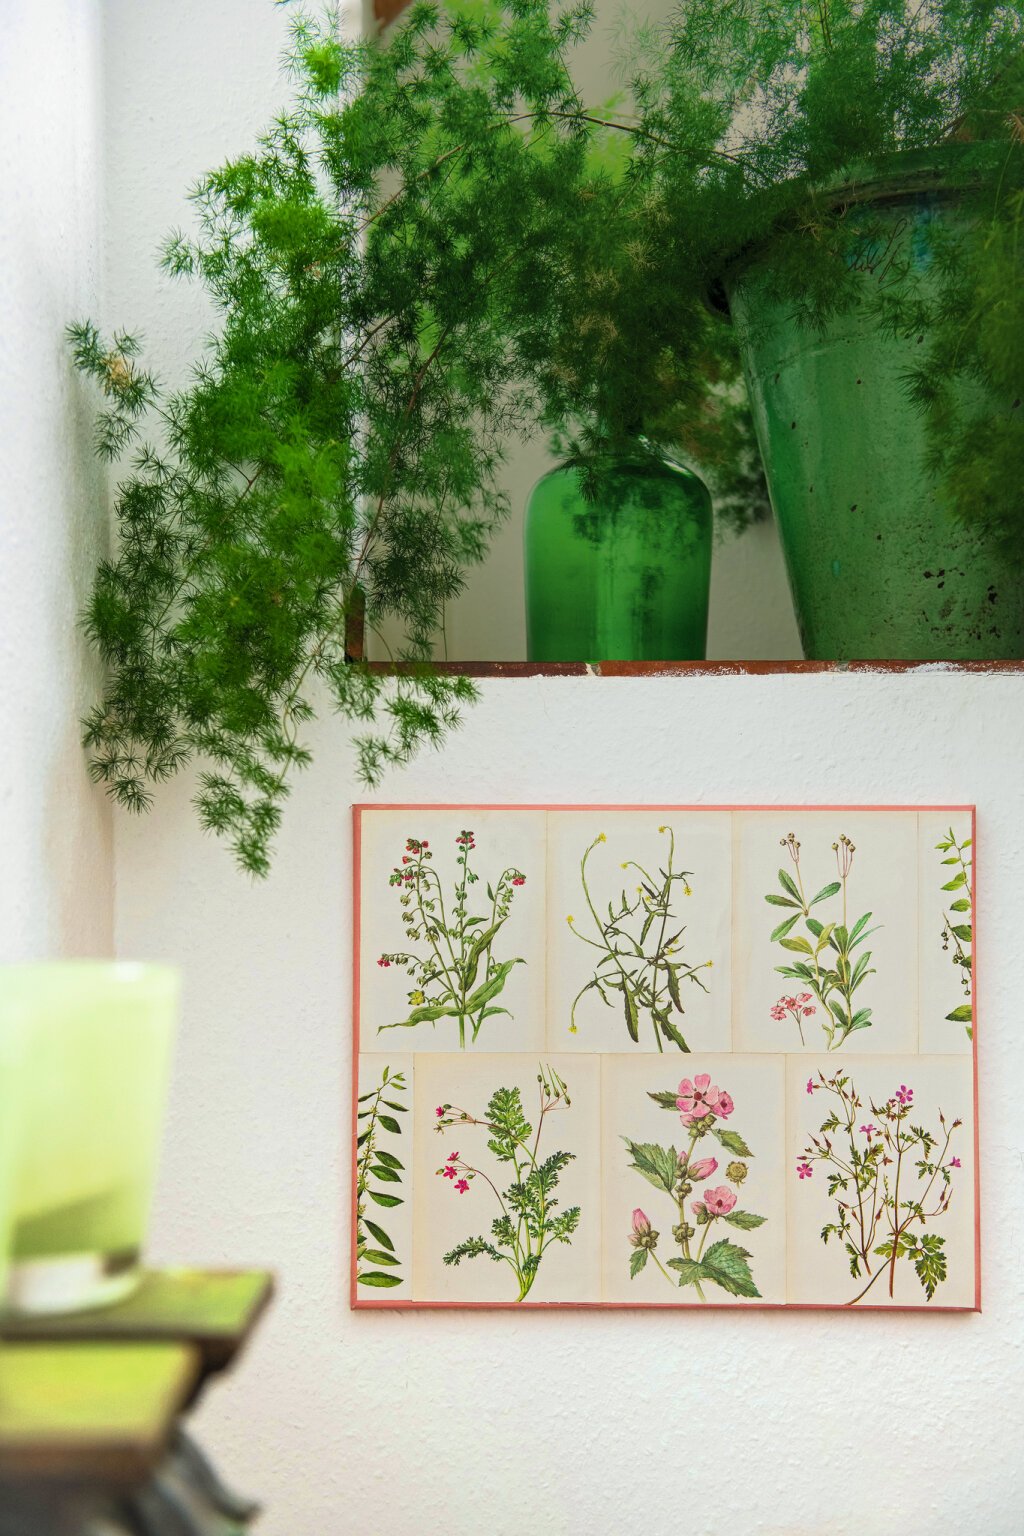 Das fertige Wandbild mit Botanikdrucken auf einer Leinwand.